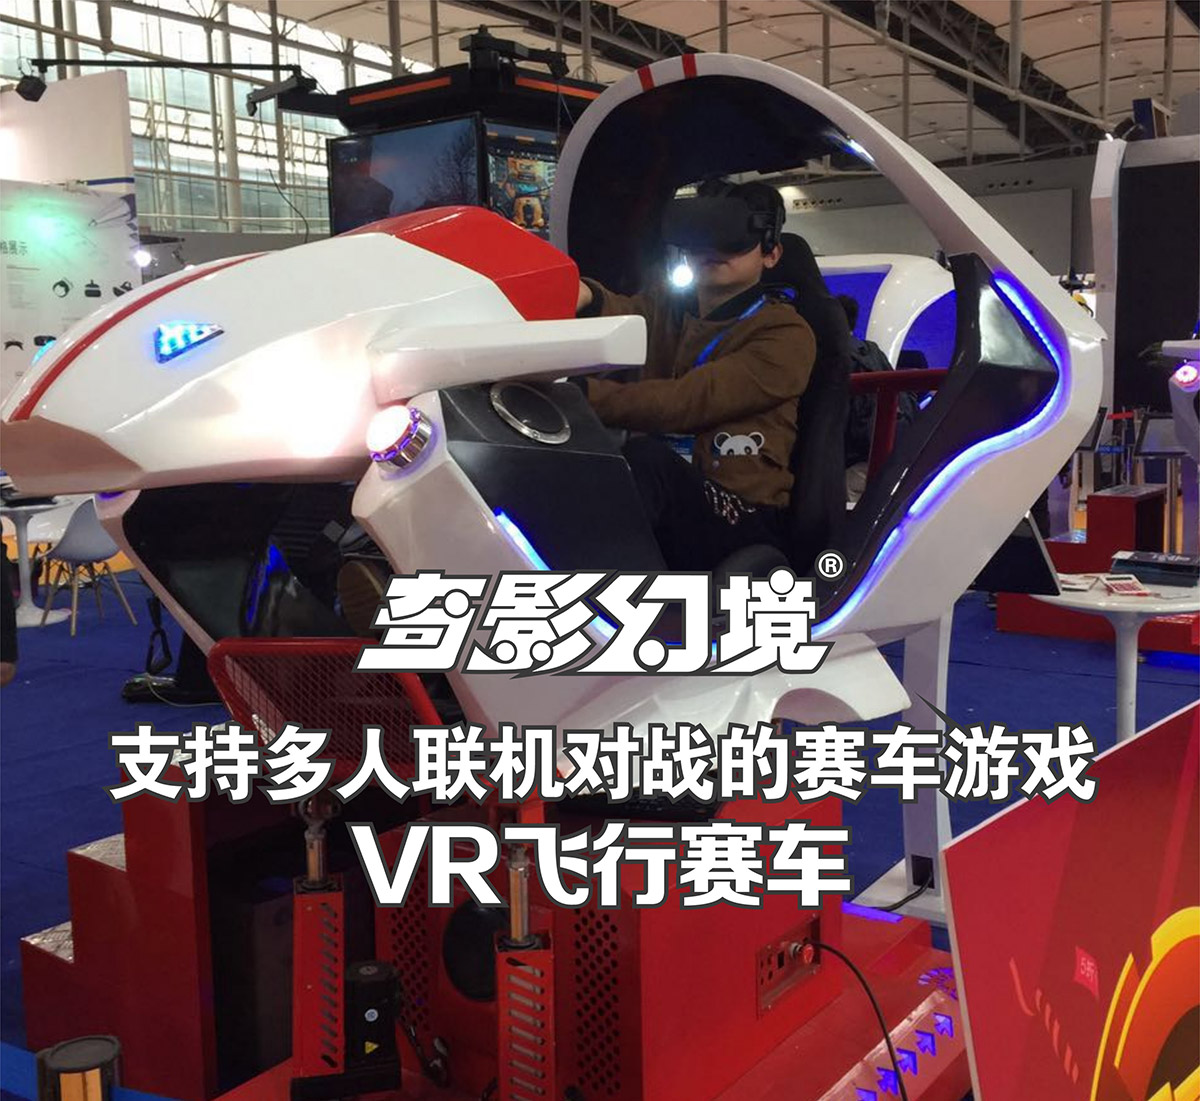 模拟安全VR飞行赛车多人联机对战.jpg